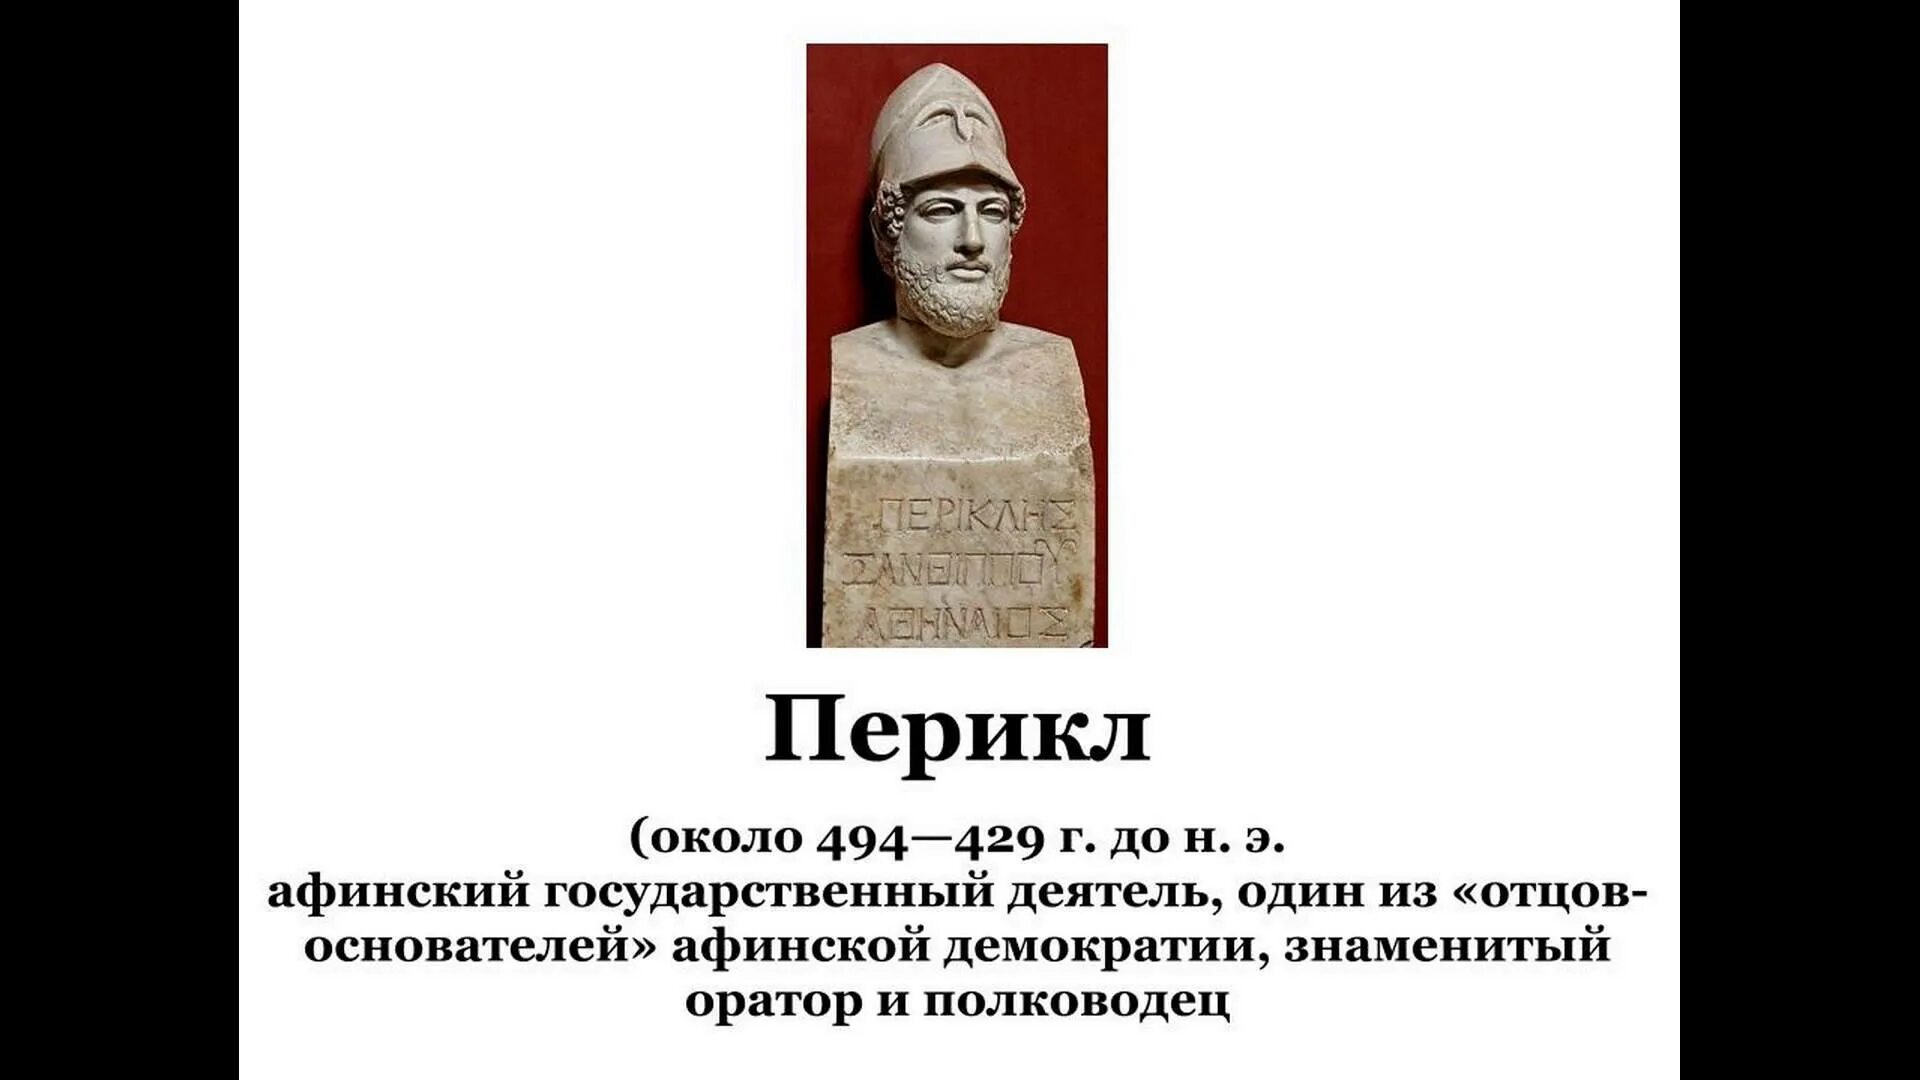 Перикл отец демократии. Перикл оратор. Основатель Афинской демократии. Отцы основатели Афинской демократии.